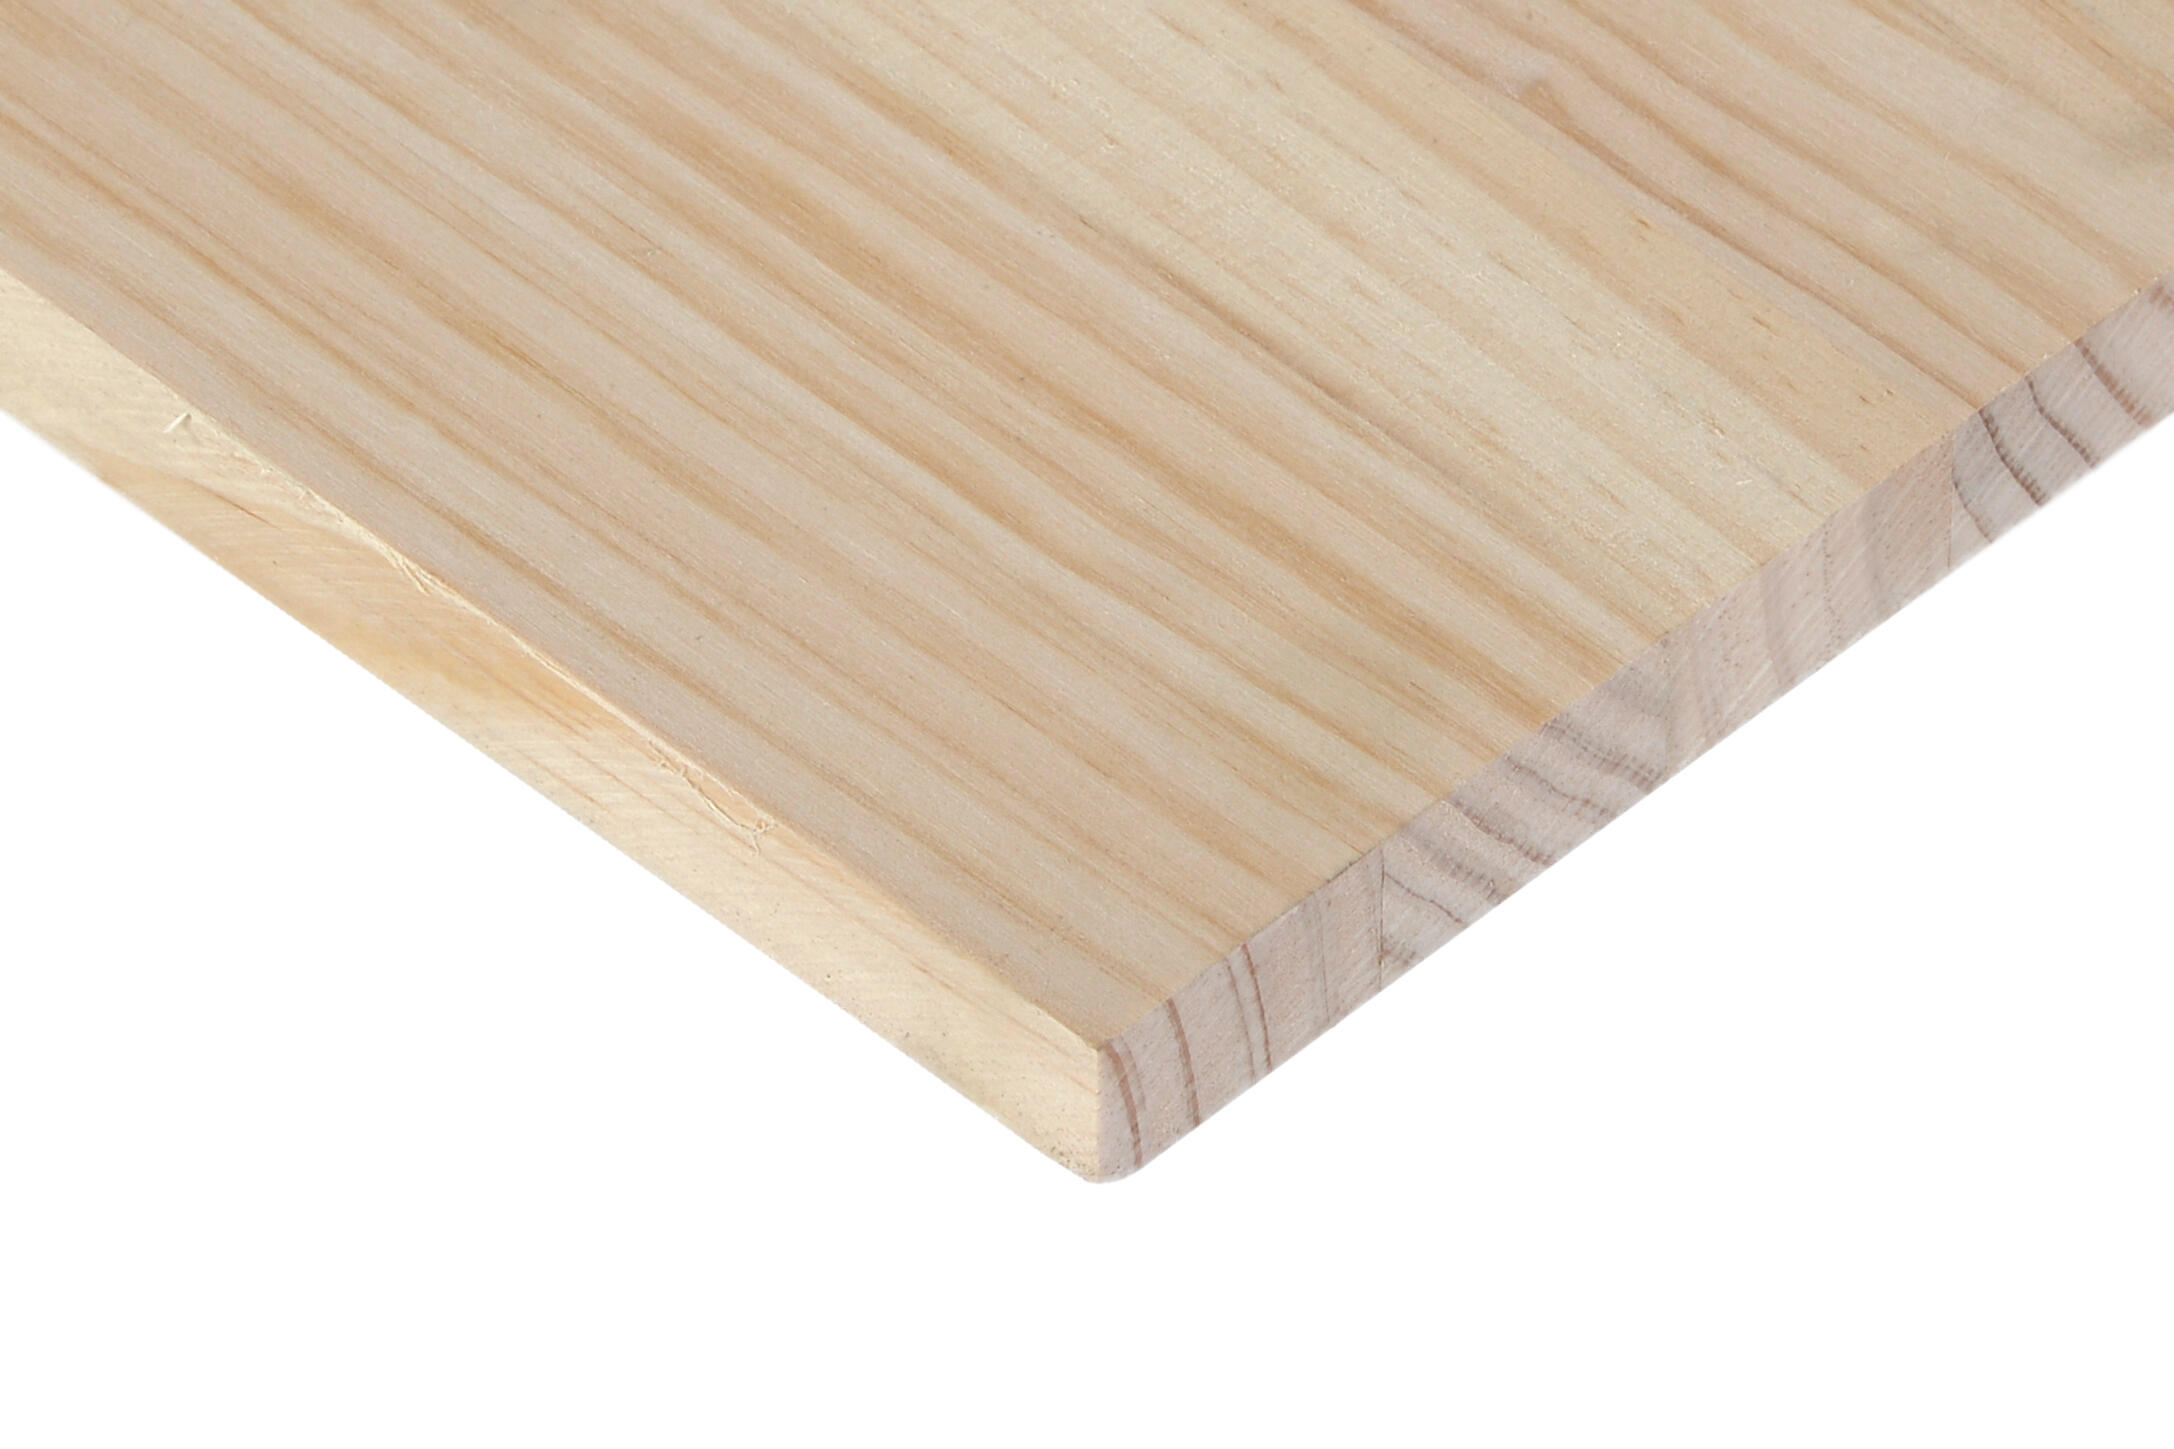 Comprar listón redondo alistonado de abeto carpintería Tienda listones de  madera